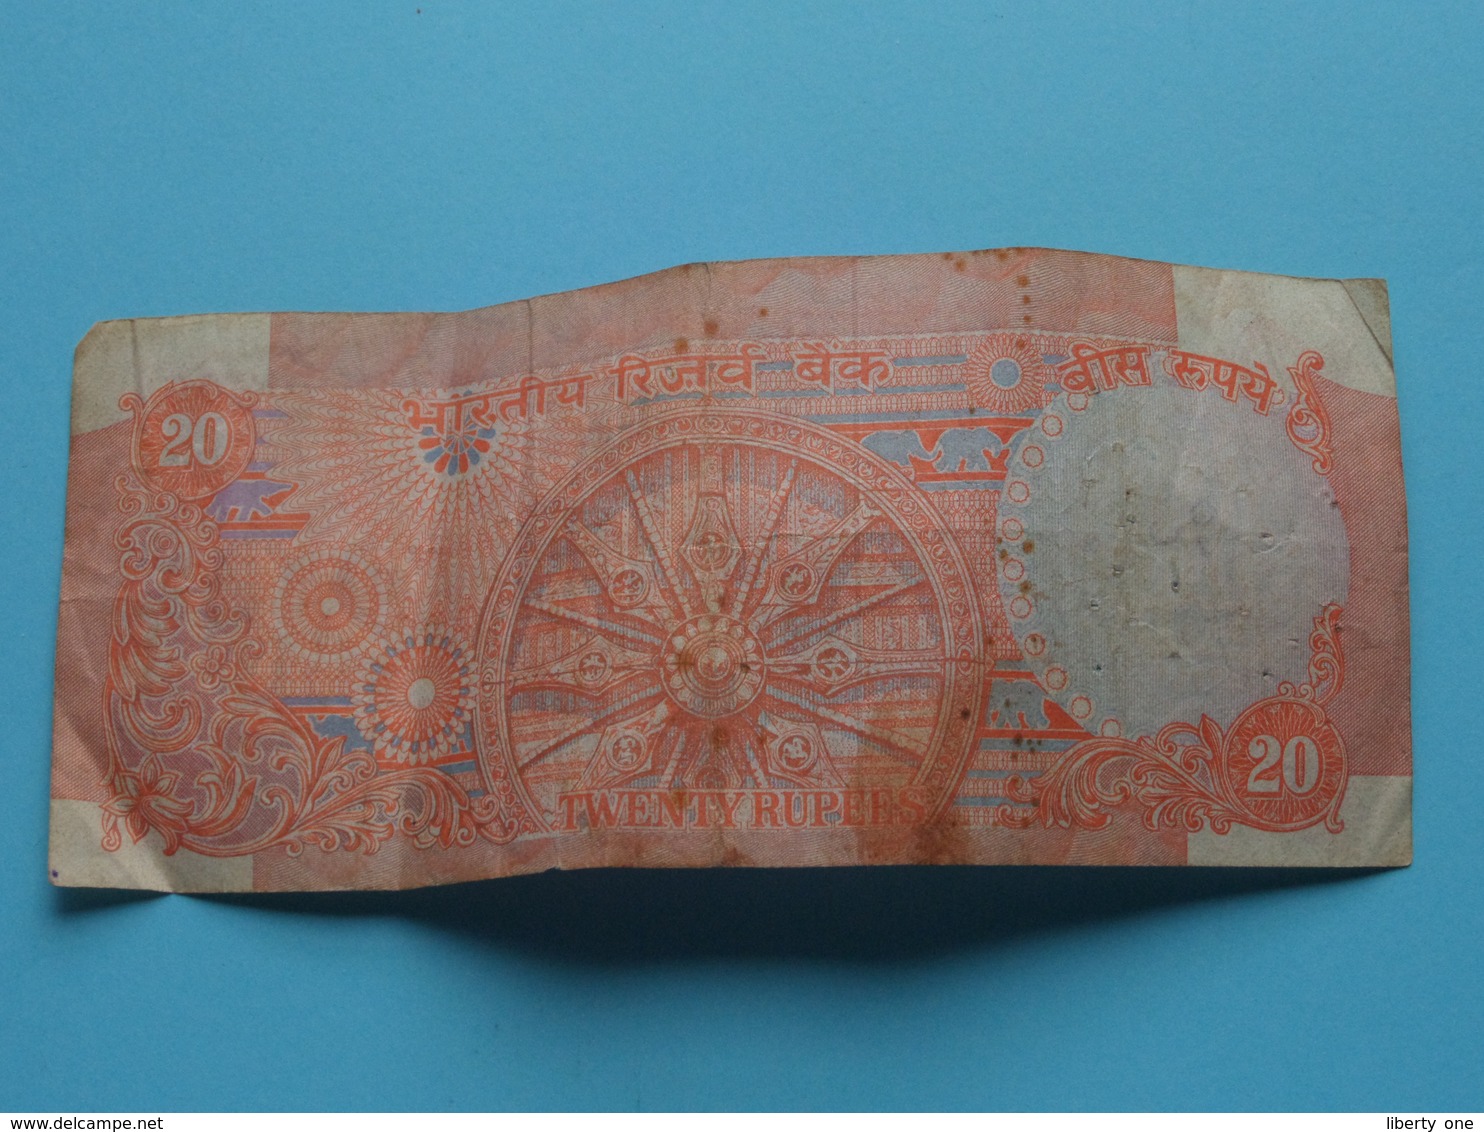 20 ( Twenty ) RUPEES : 47K 962564 ( Reserve Bank Of India ) ! - Inde